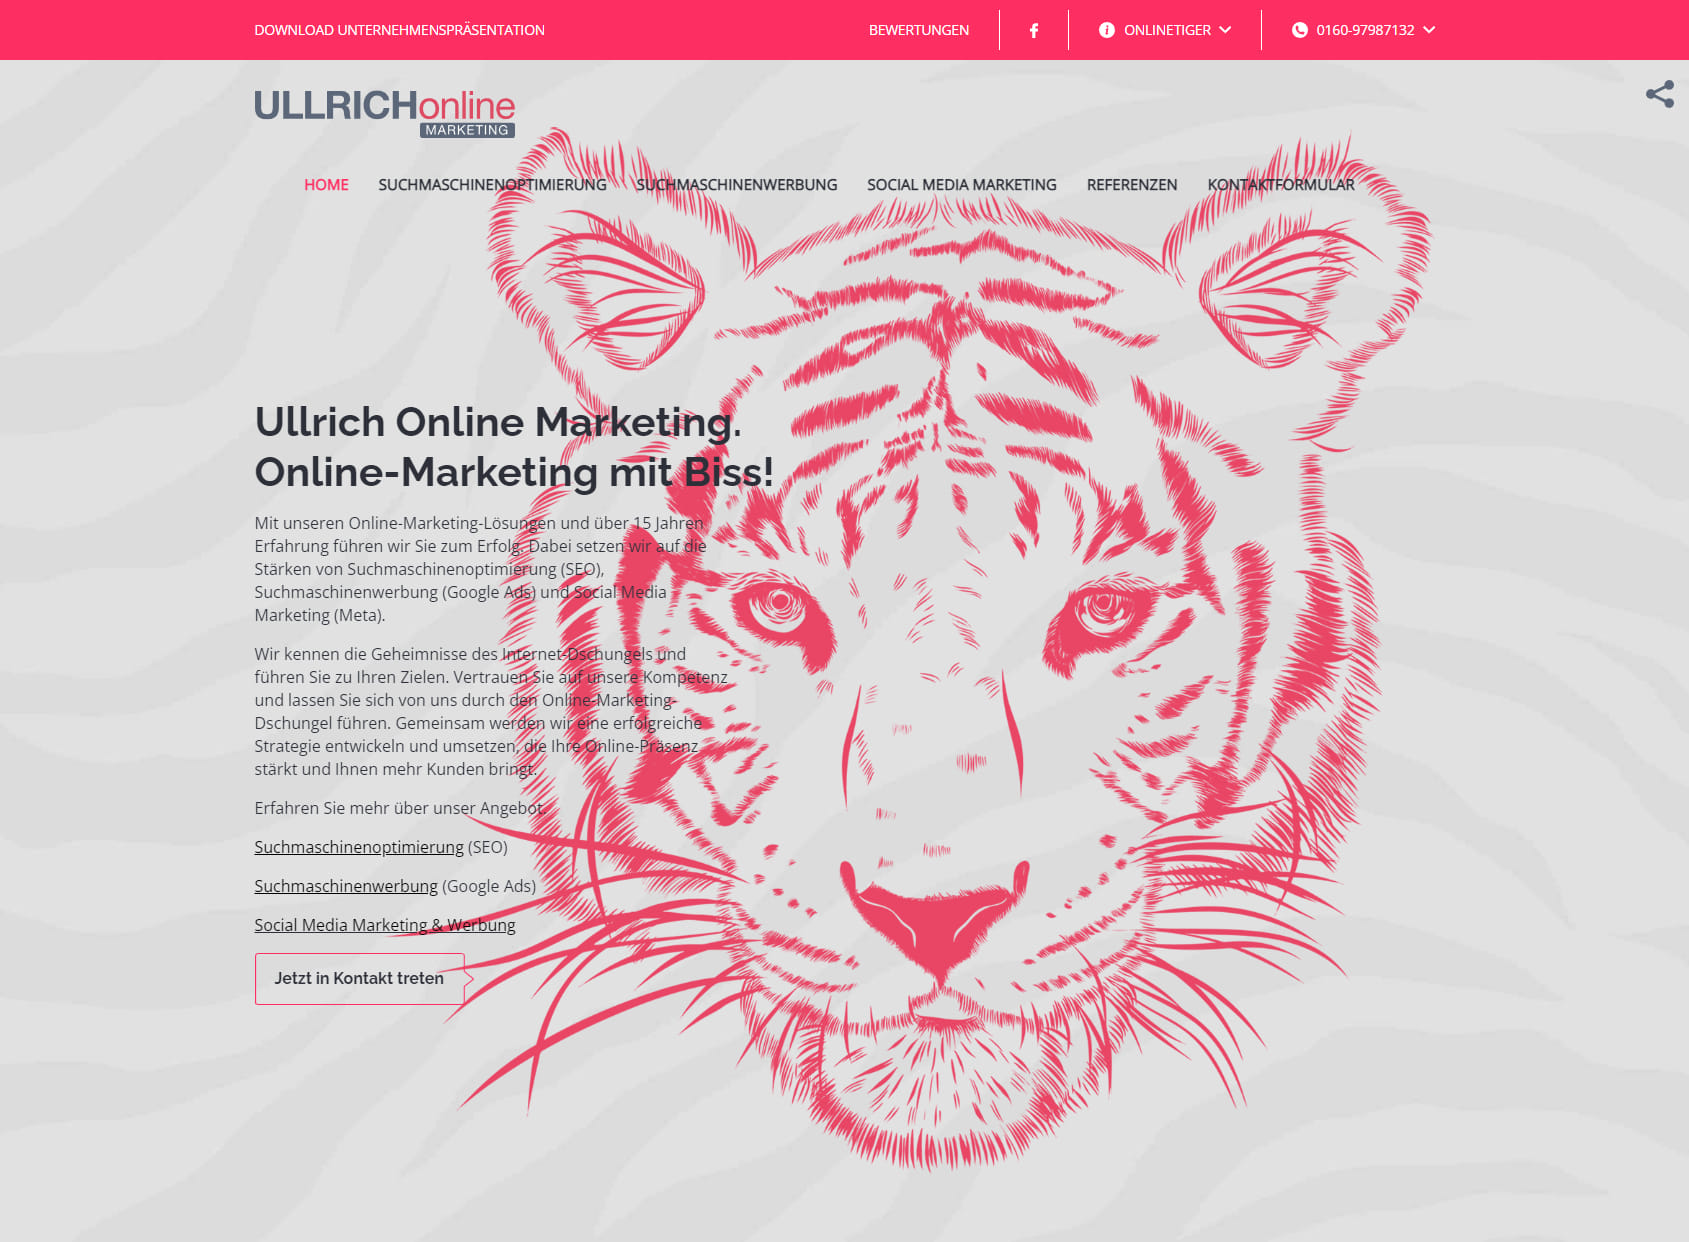 Ullrich Online Marketing